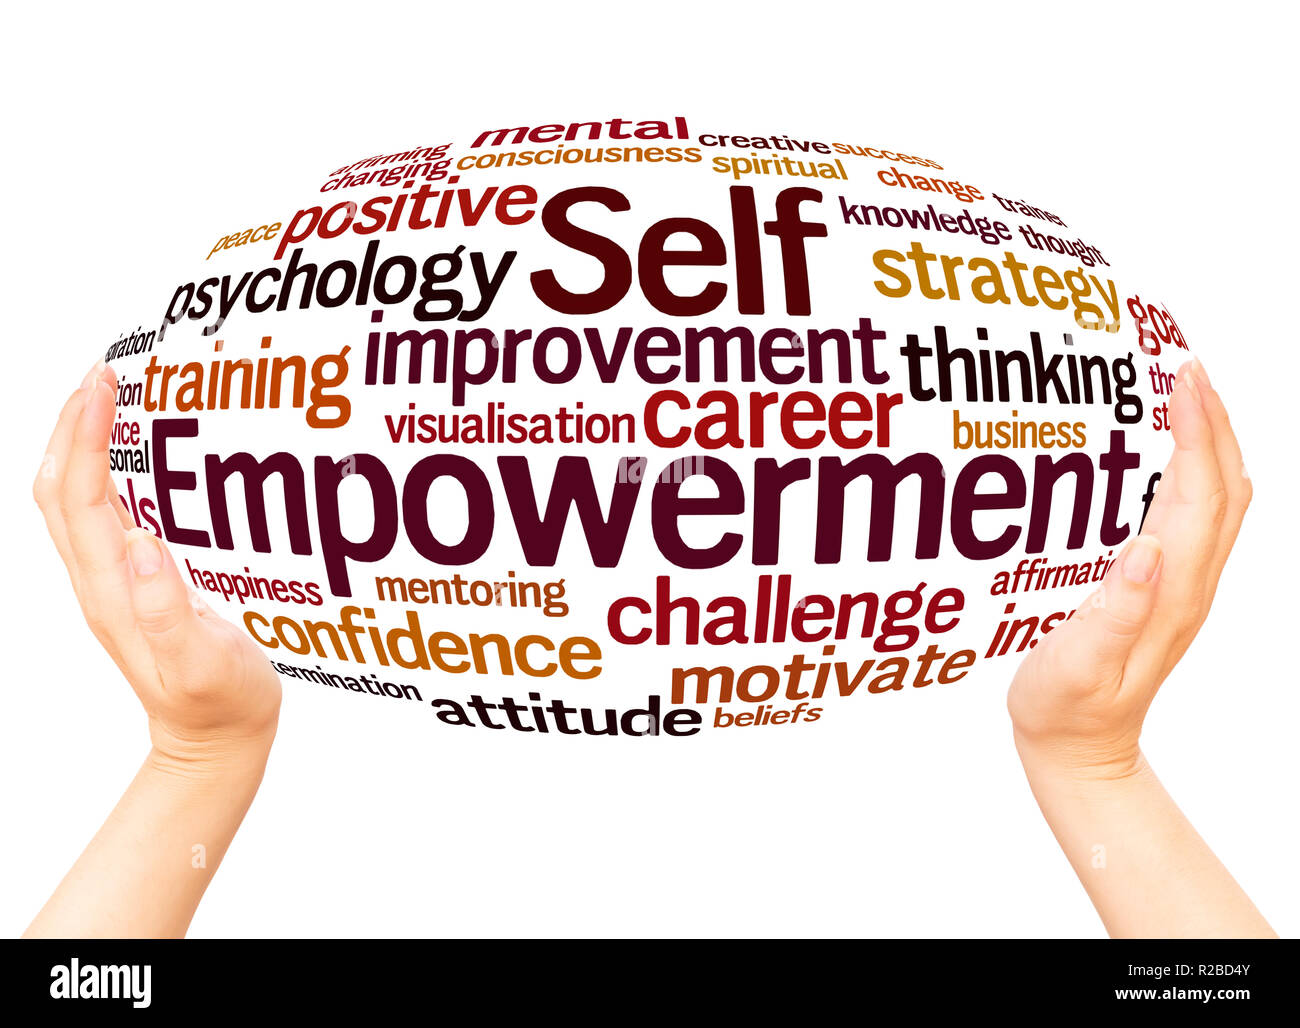 Self Empowerment: BusinessHAB.com